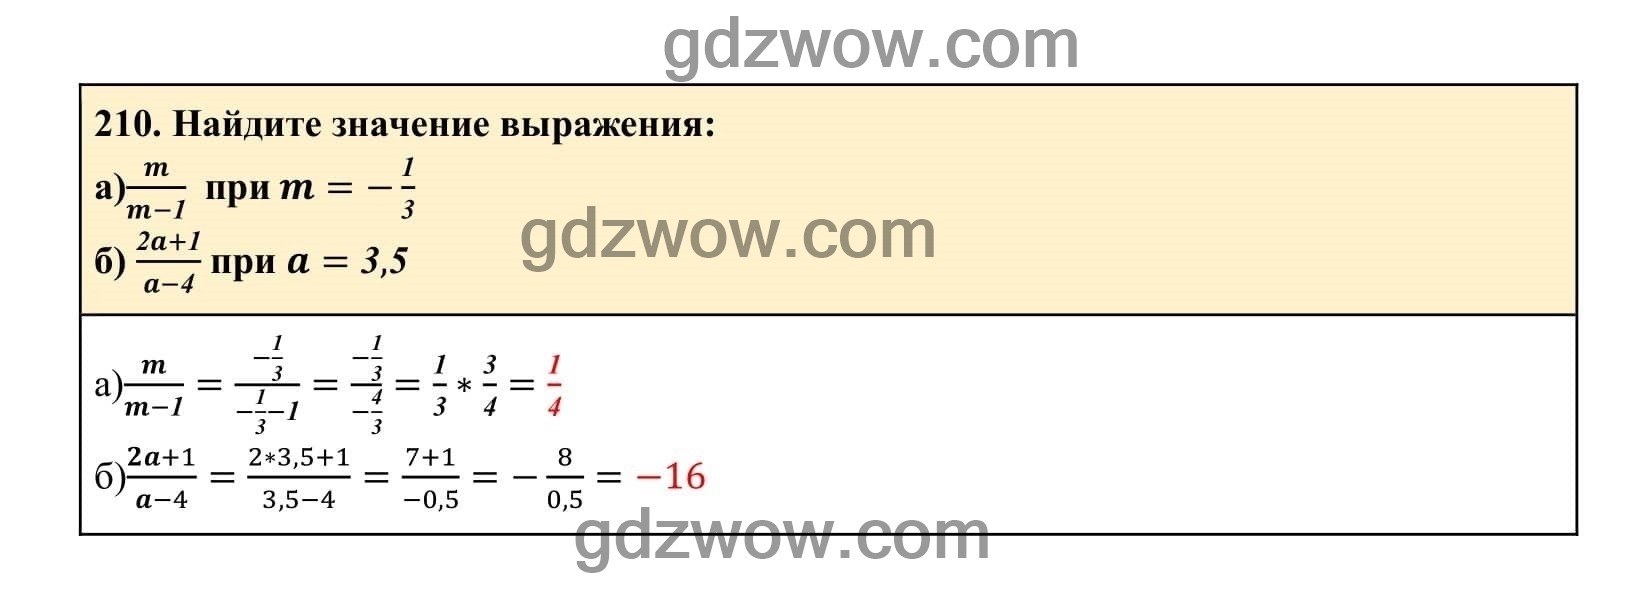 Упражнение 210 - ГДЗ по Алгебре 7 класс Учебник Макарычев (решебник) - GDZwow